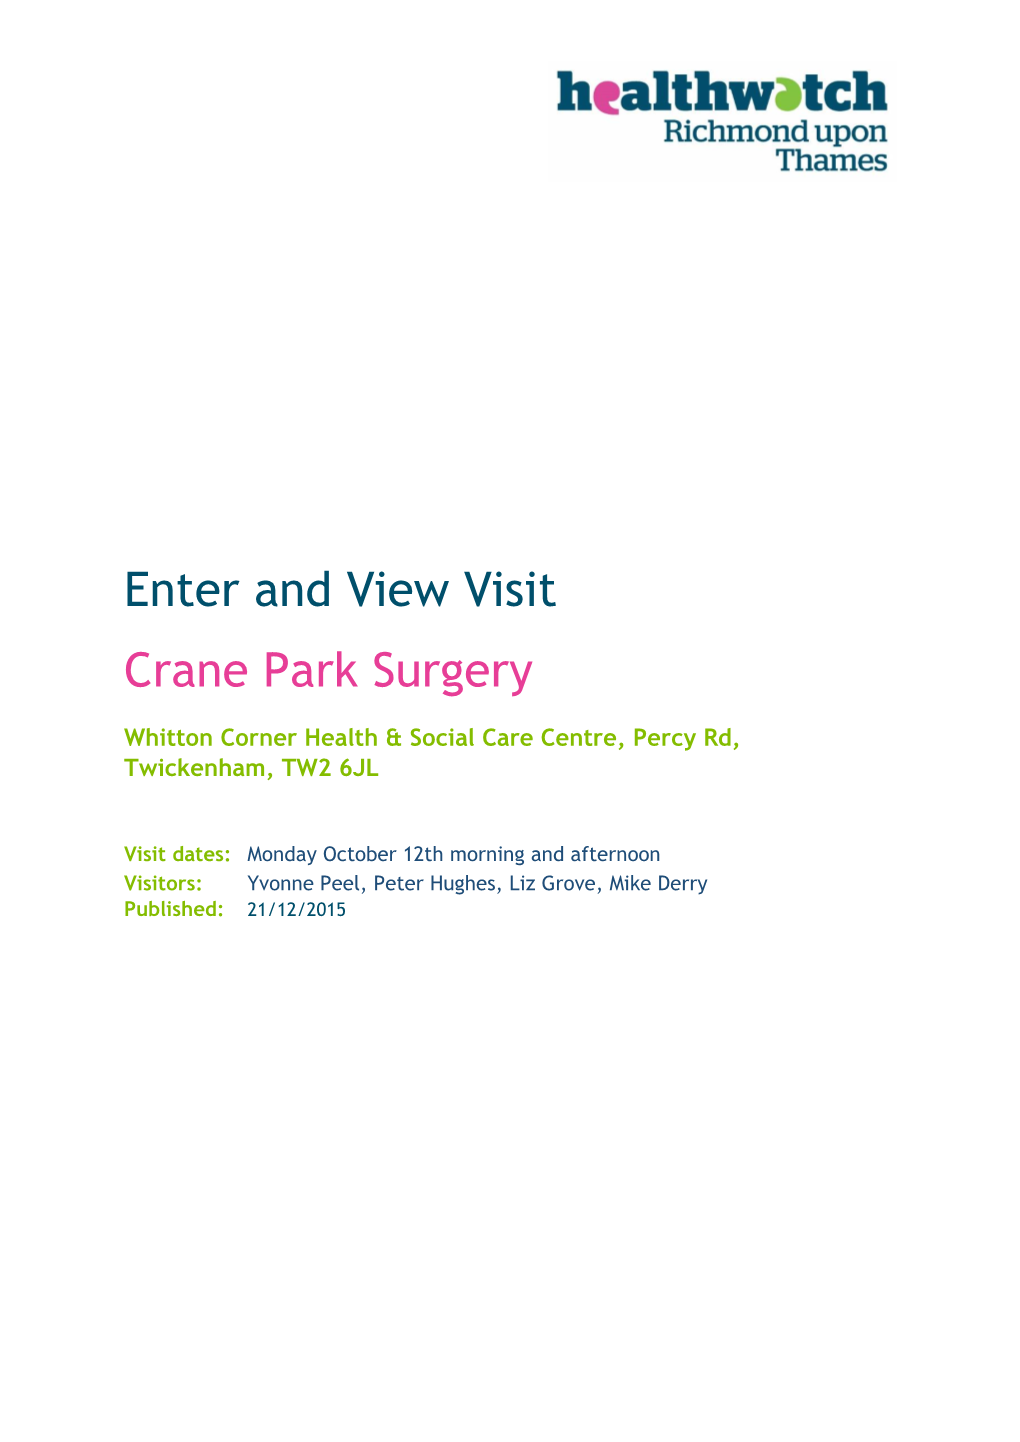 Enter and View Visit Crane Park Surgery